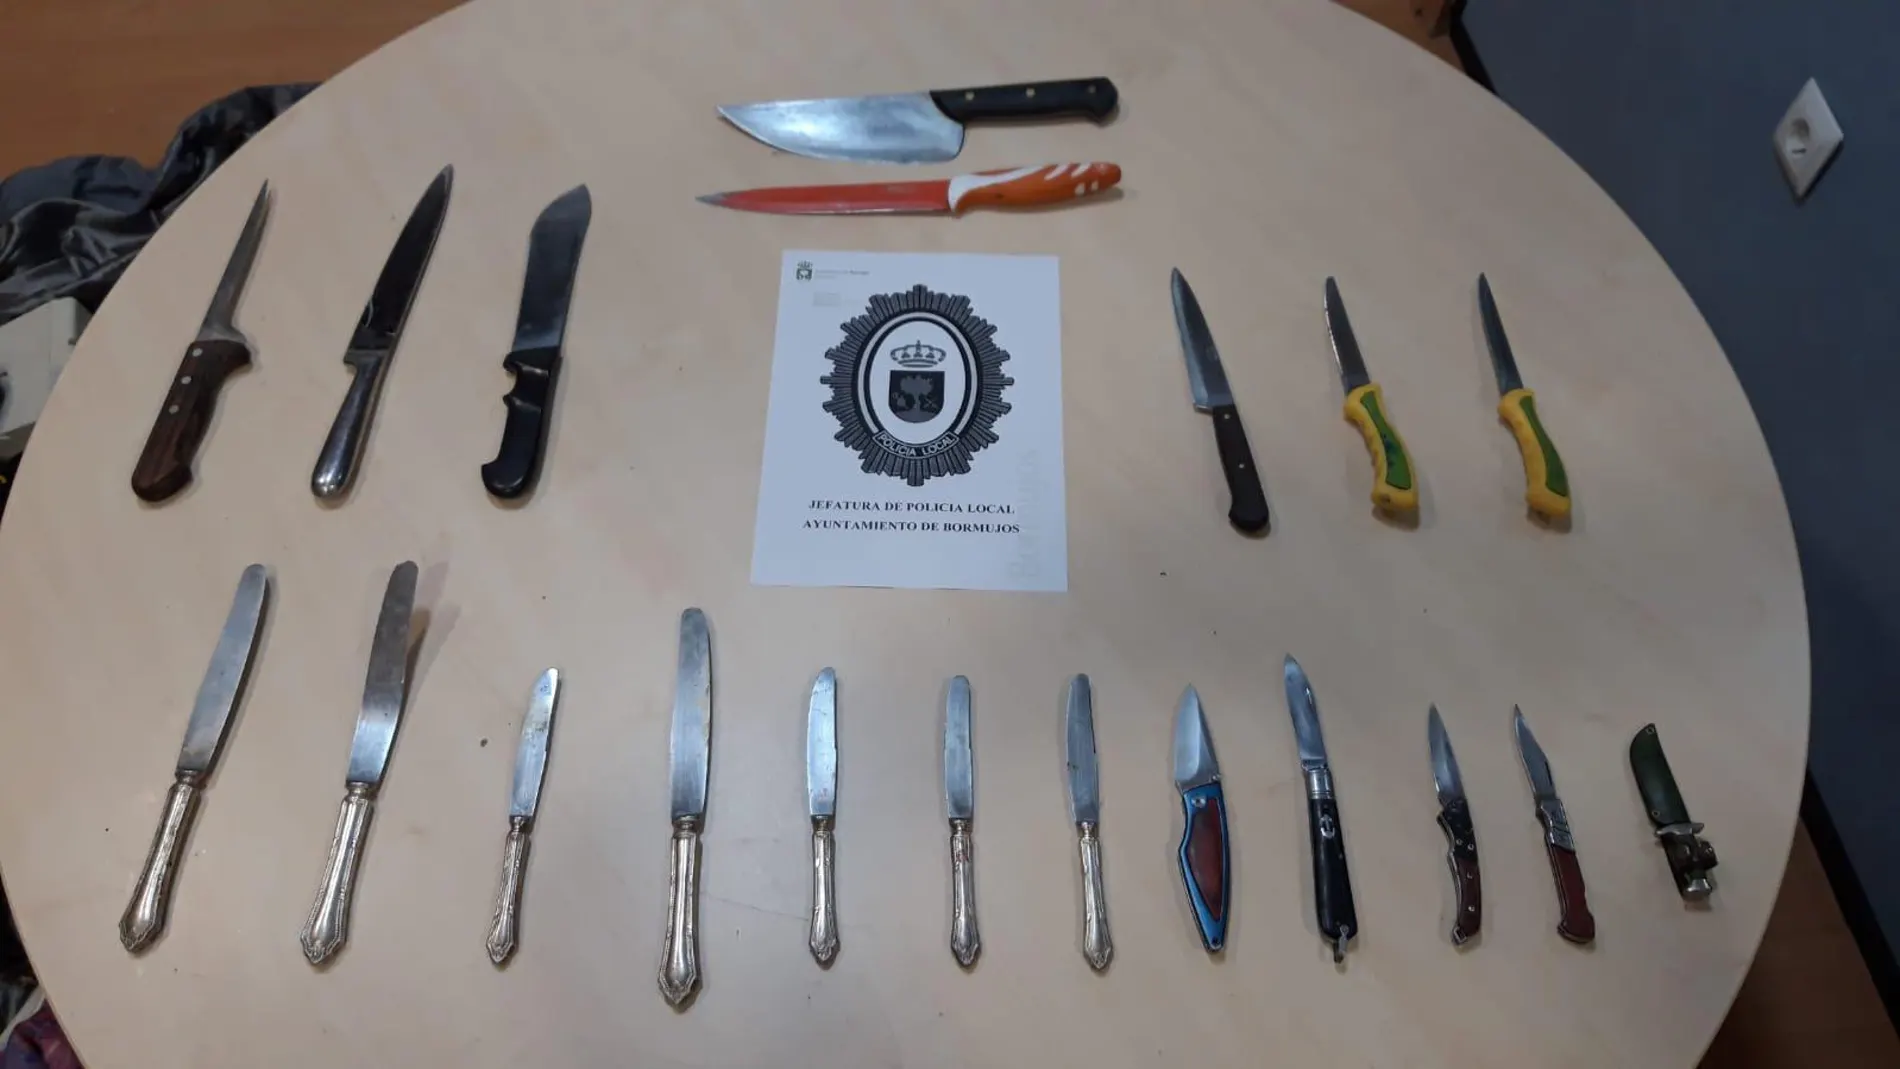 Imagen de las armas incautadas facilitada por el Ayuntamiento de Bormujos